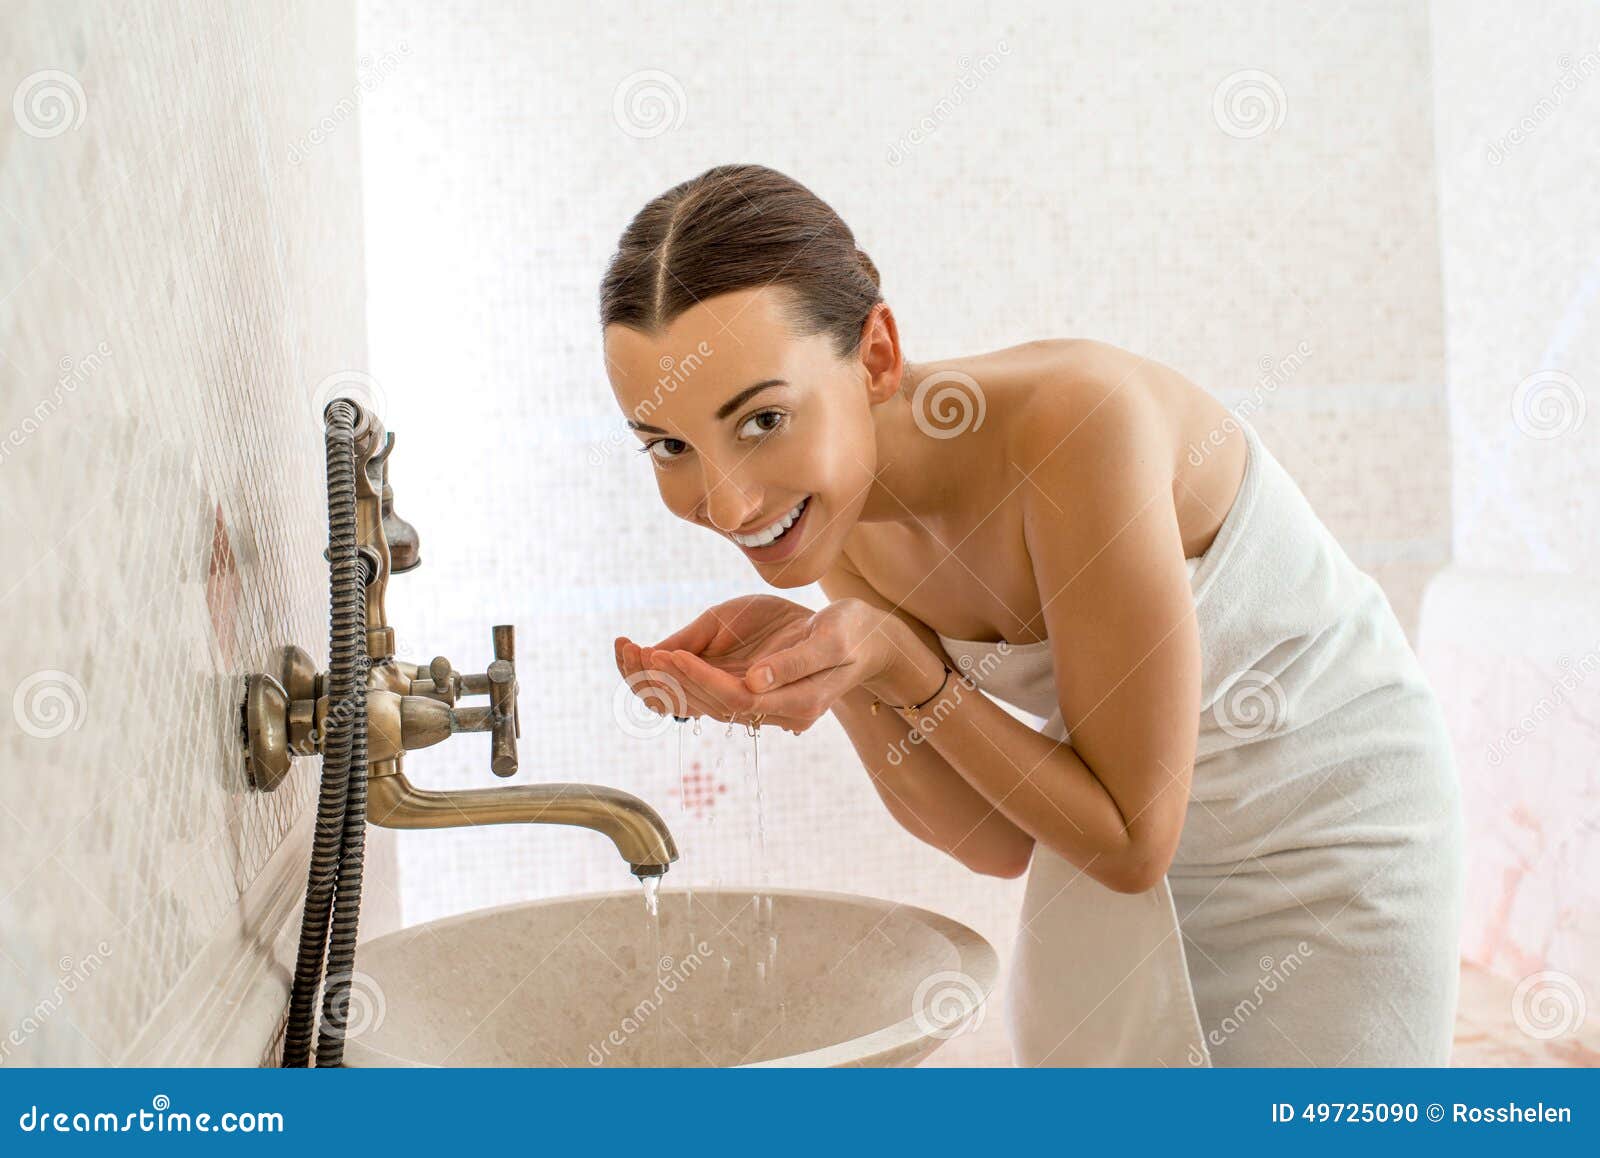 Моют какое лицо. Женщина умывается. Девушка в ванной умывается. Умыться. Человек умывается.